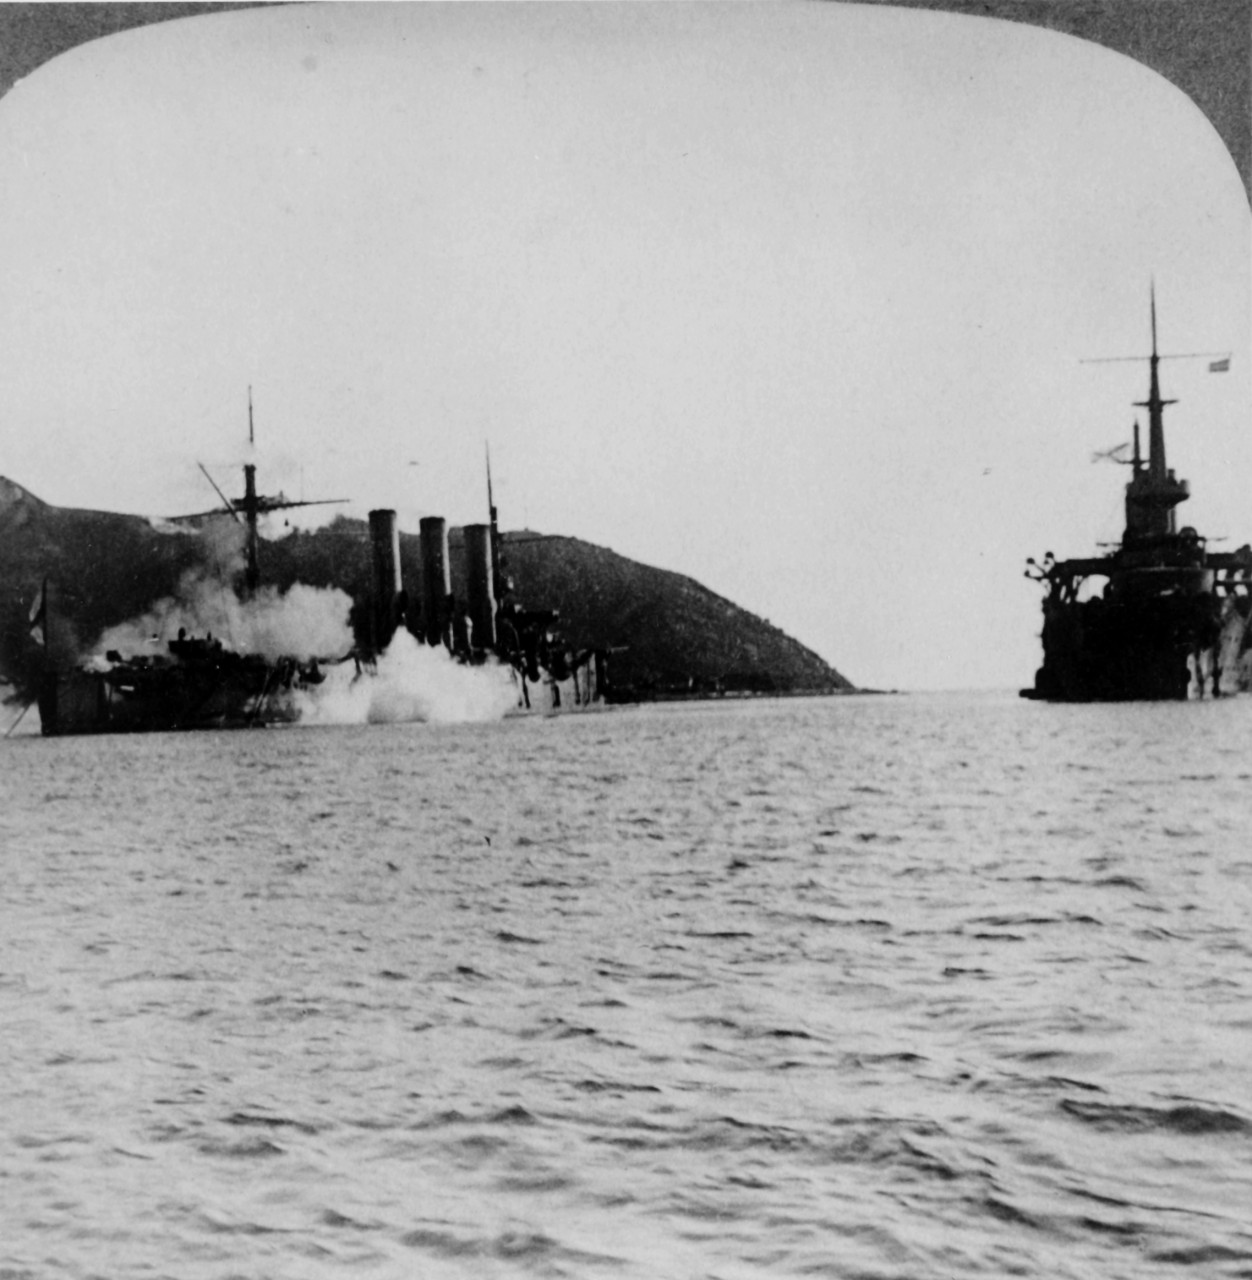 Seige of Port Arthur, Russo-Japanese War, 1904